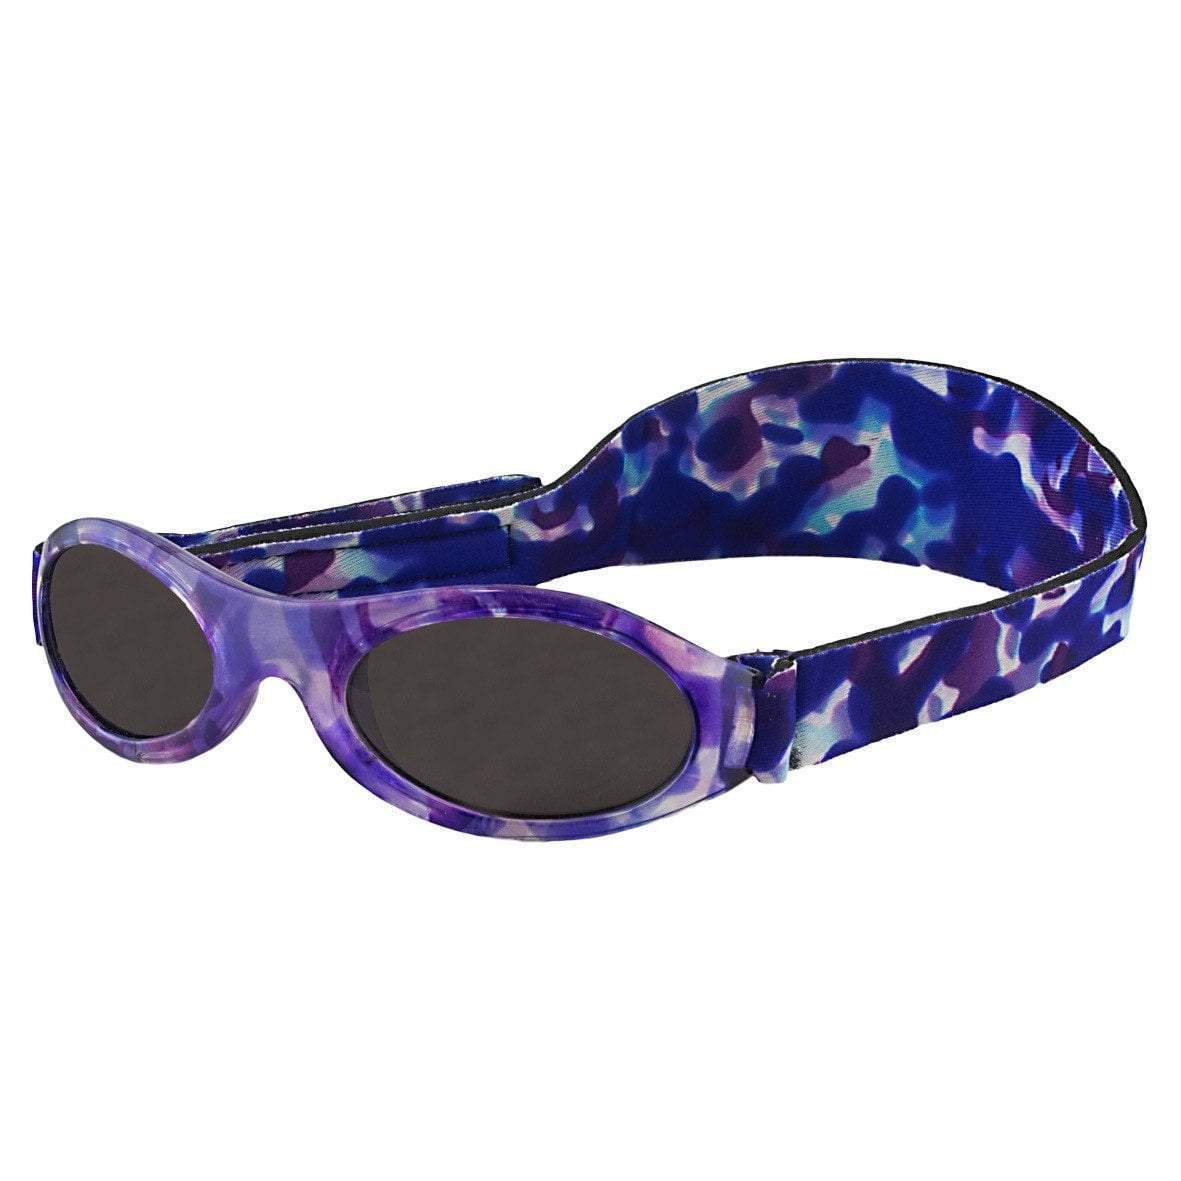 BANZ Sunglasses Toddler Sunglasses - Wrap Around (Retiring) Purple Crush / Kids